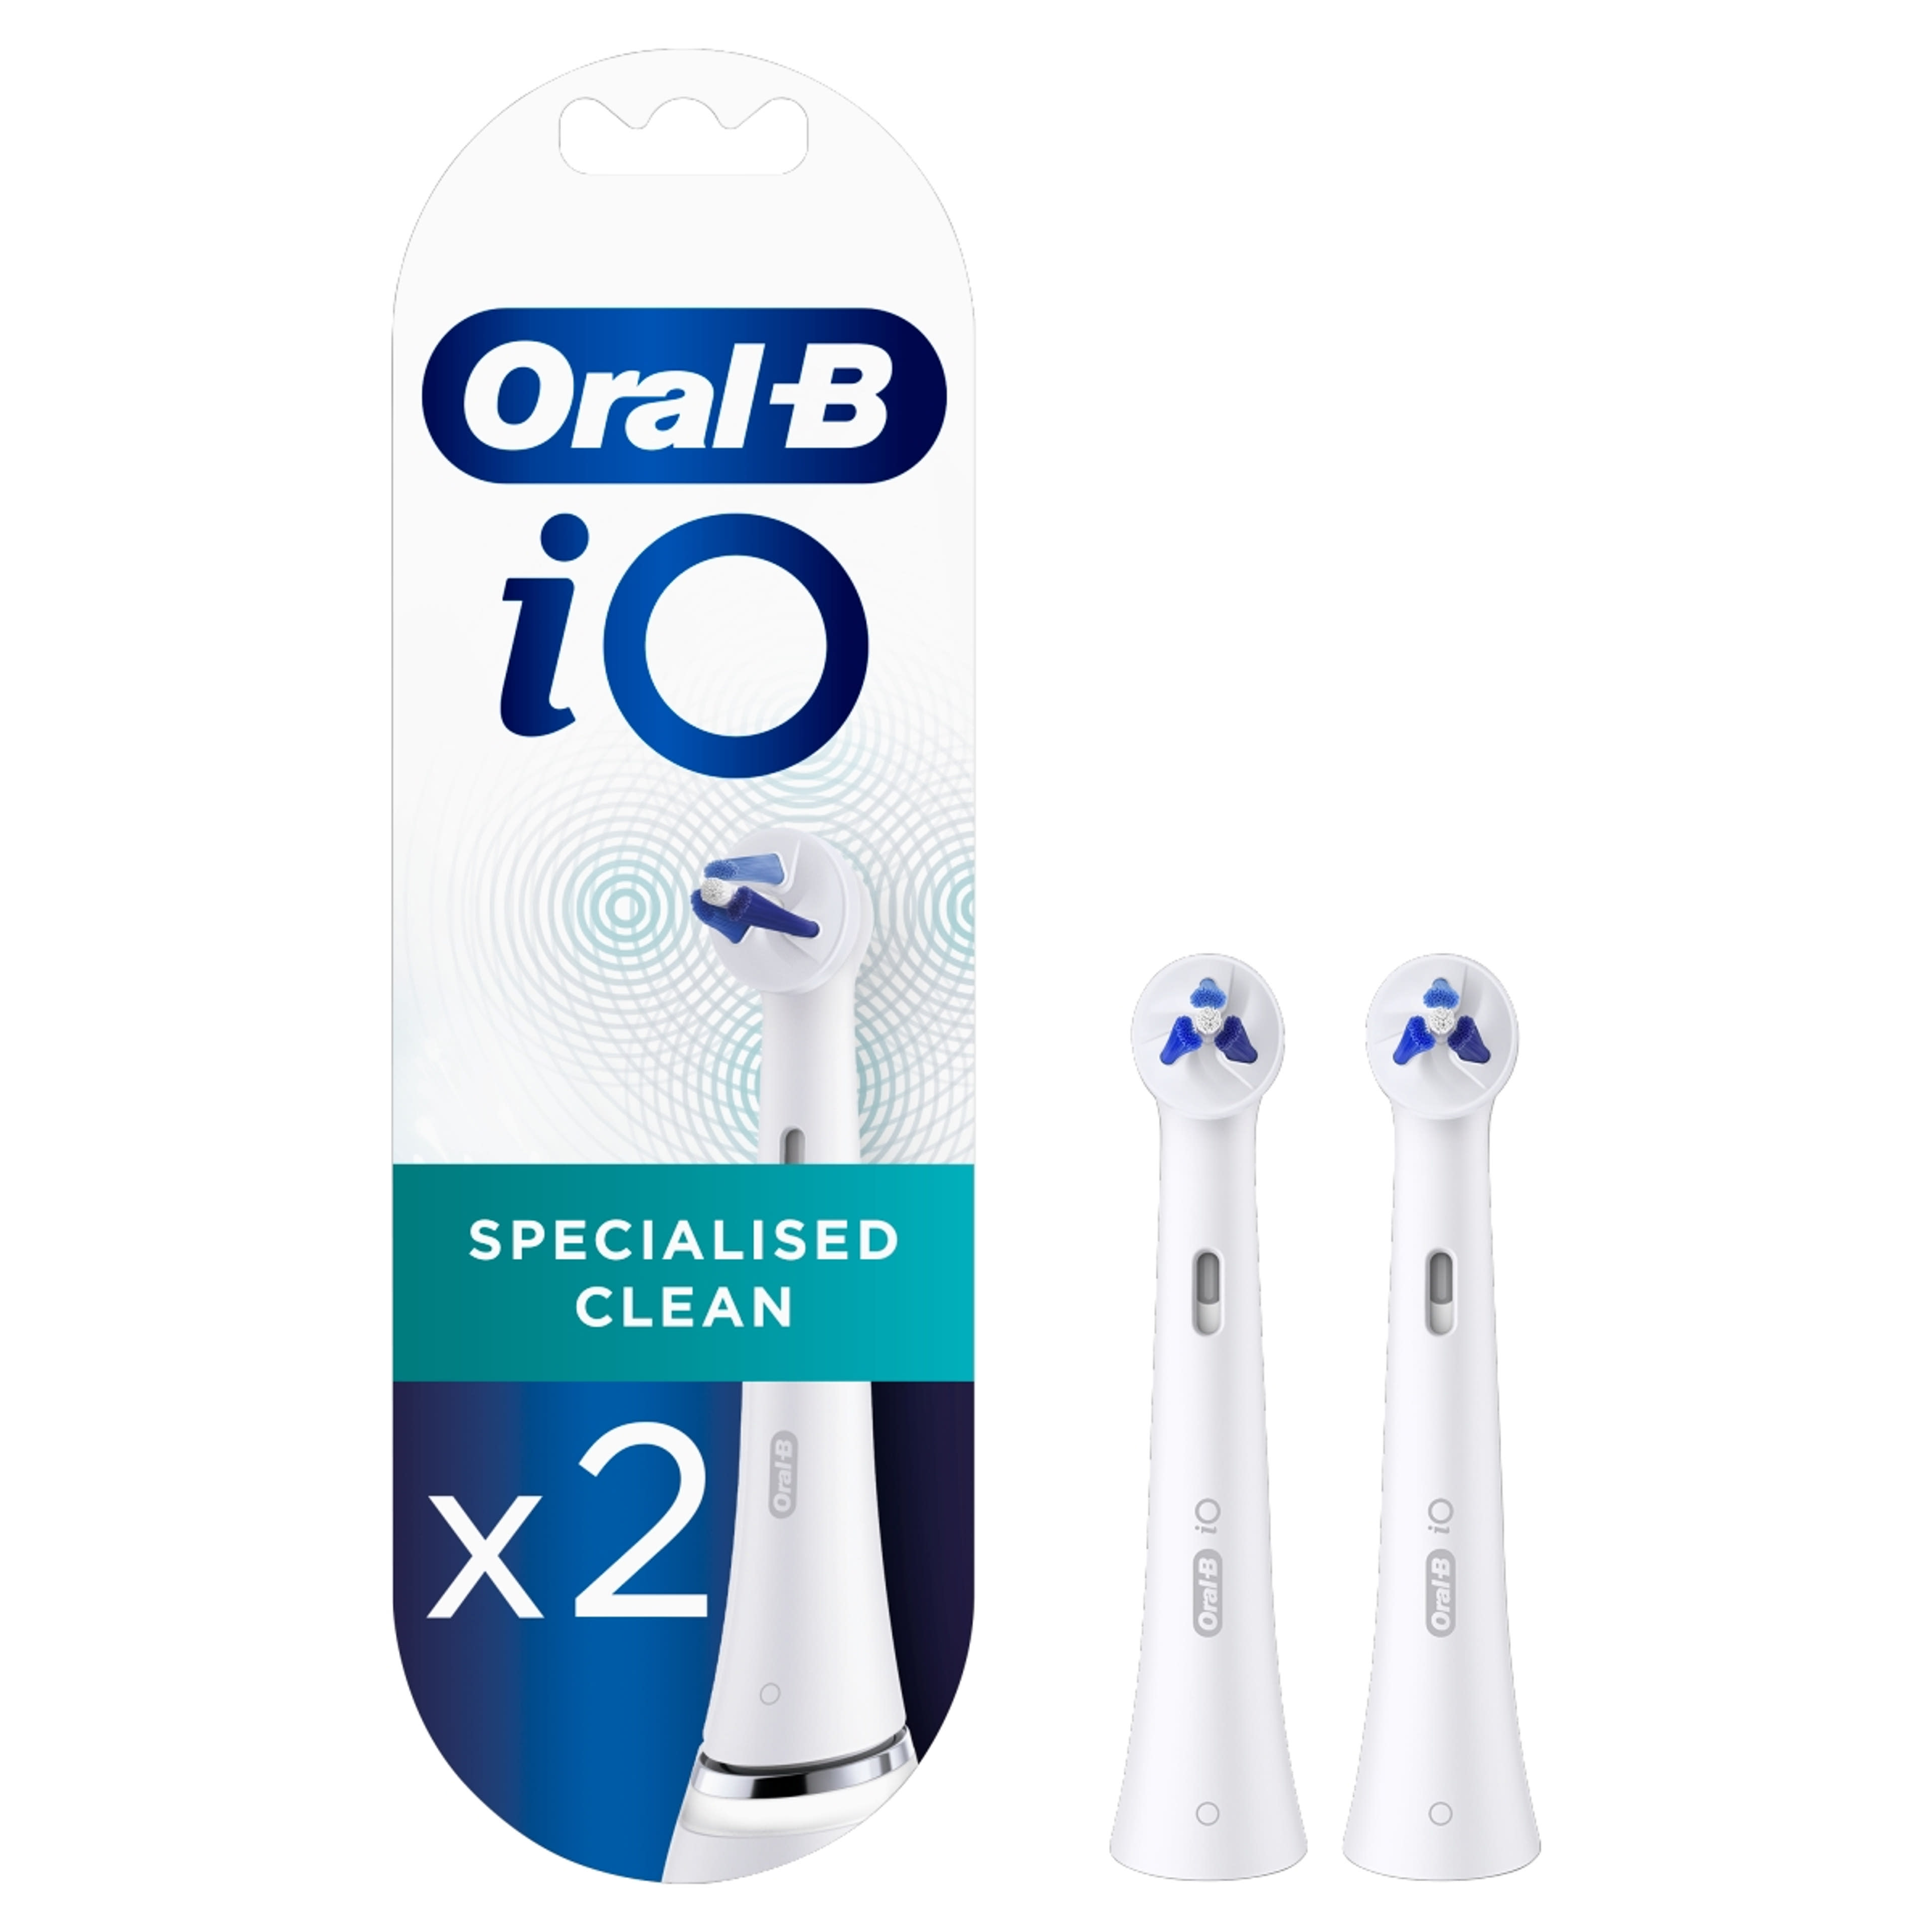 Oral-B iO Specialised Clean fogkefefej - 2 db-10